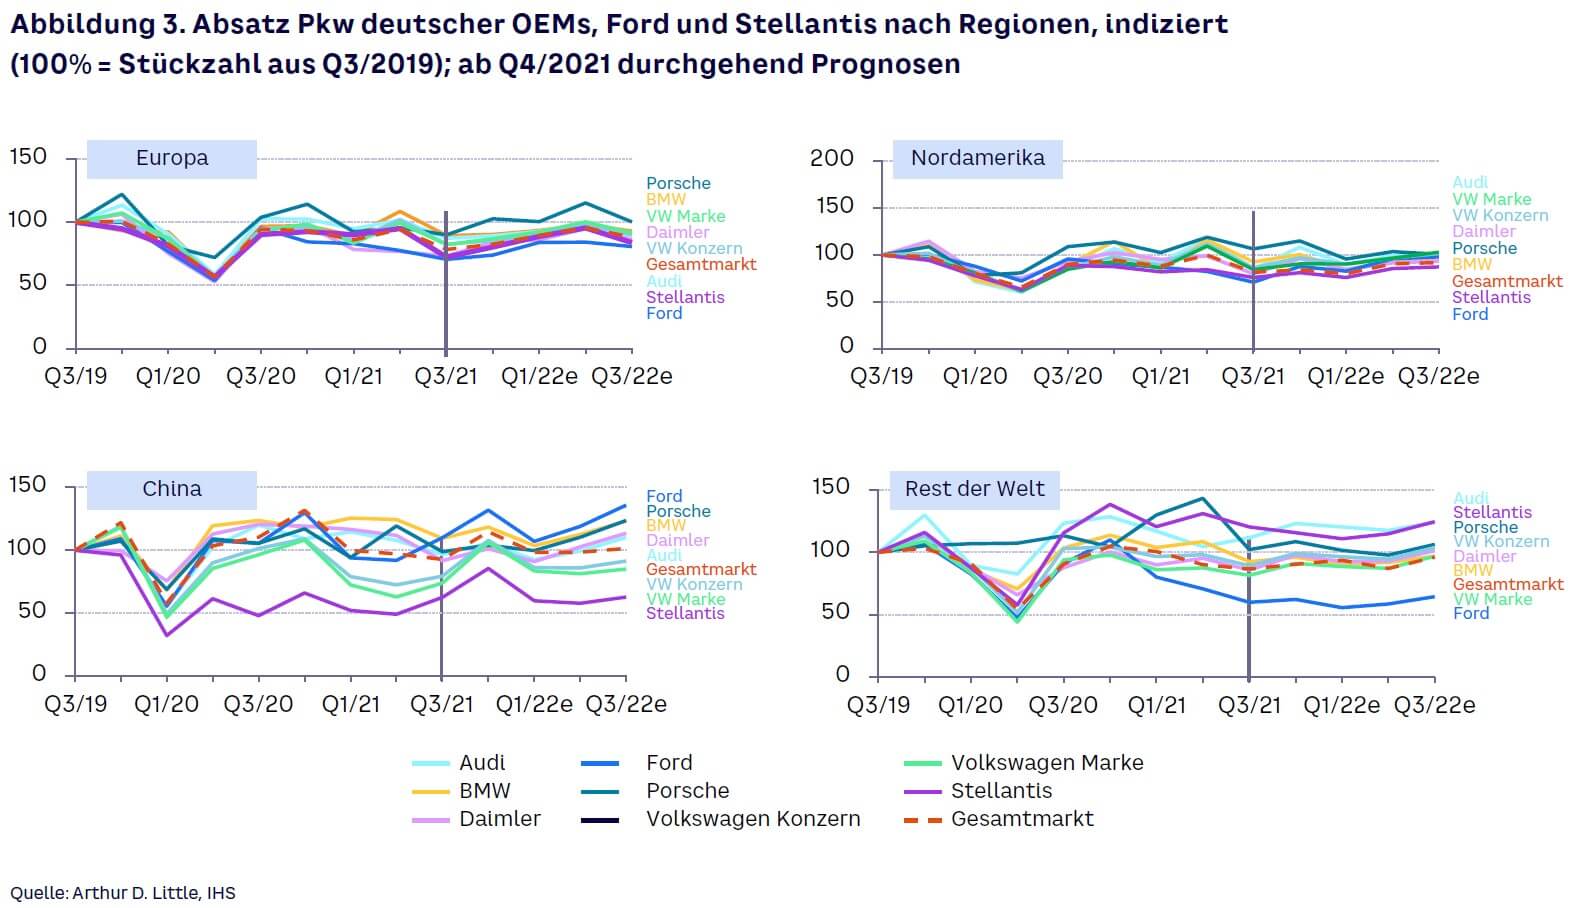 Abbildung 3. Absatz Pkd, deutscher OEM, Ford und Stellantis nach Regionen, indiziert (100% = Stückzahl aus Q3/2019); ab Q4/2021 durchgehend Prognosen